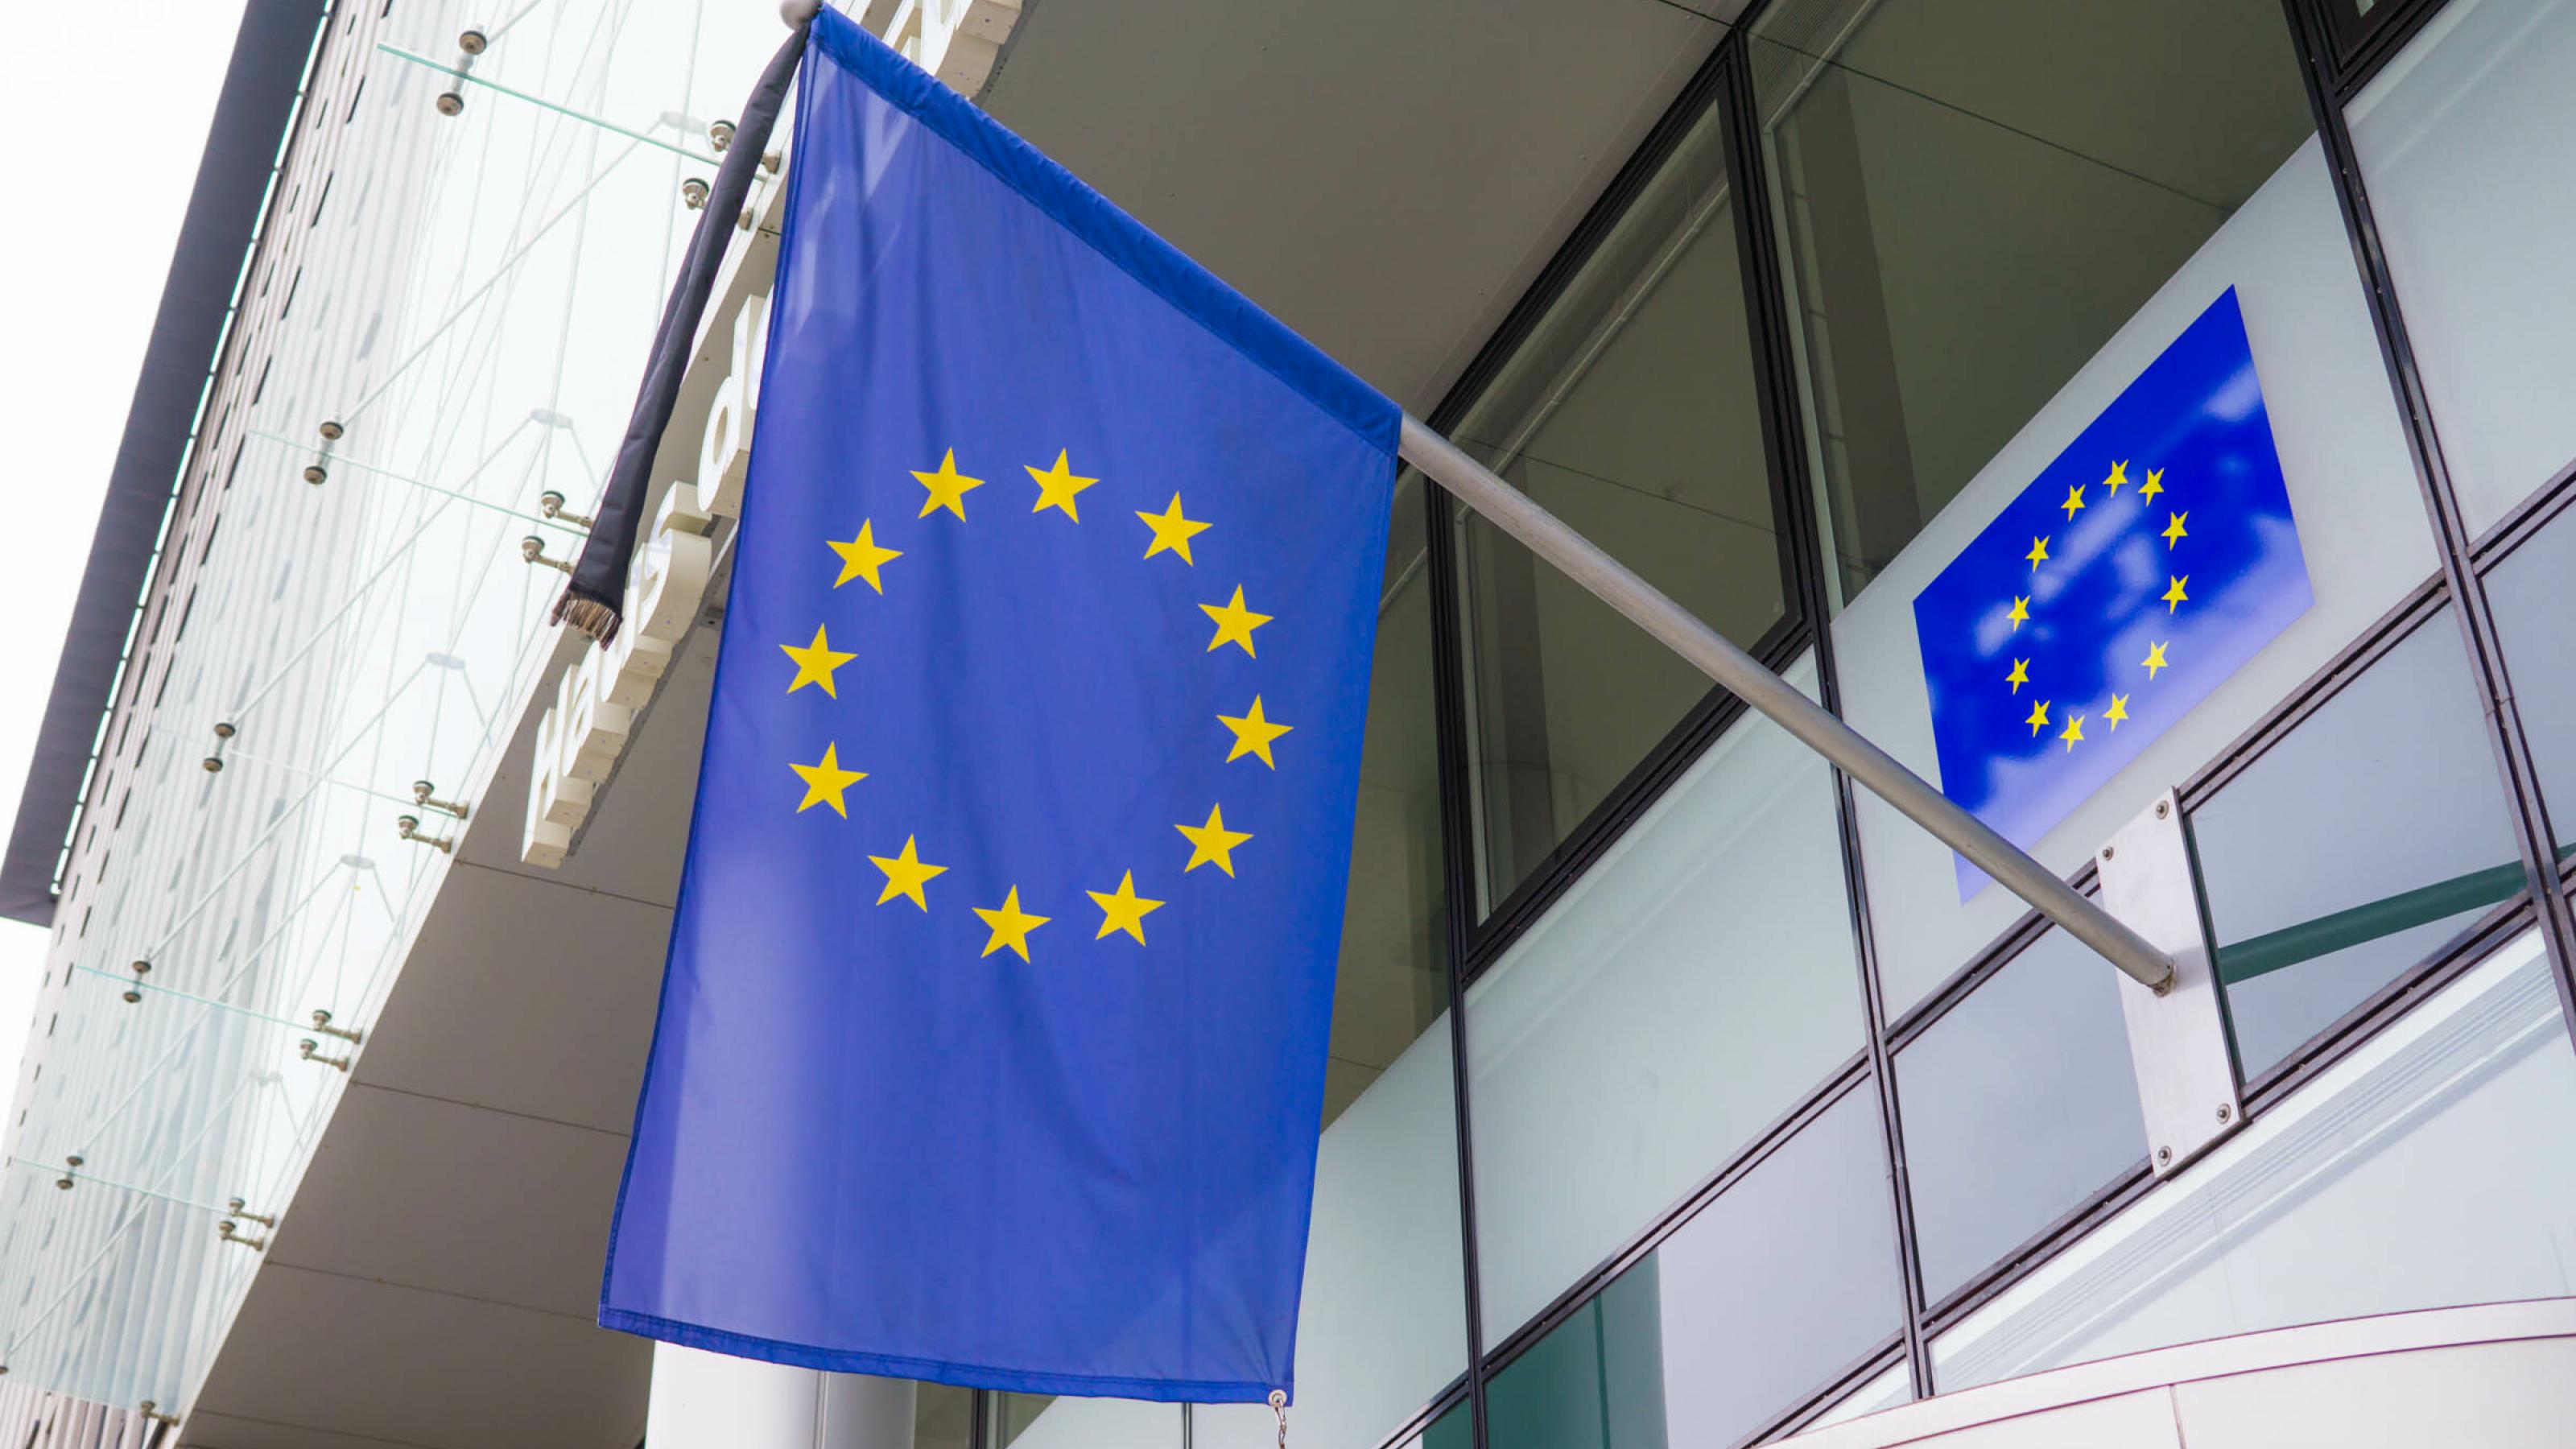 Ausschnitt der Fassade eines modernen Bürogebäudes mit EU-Fahne.